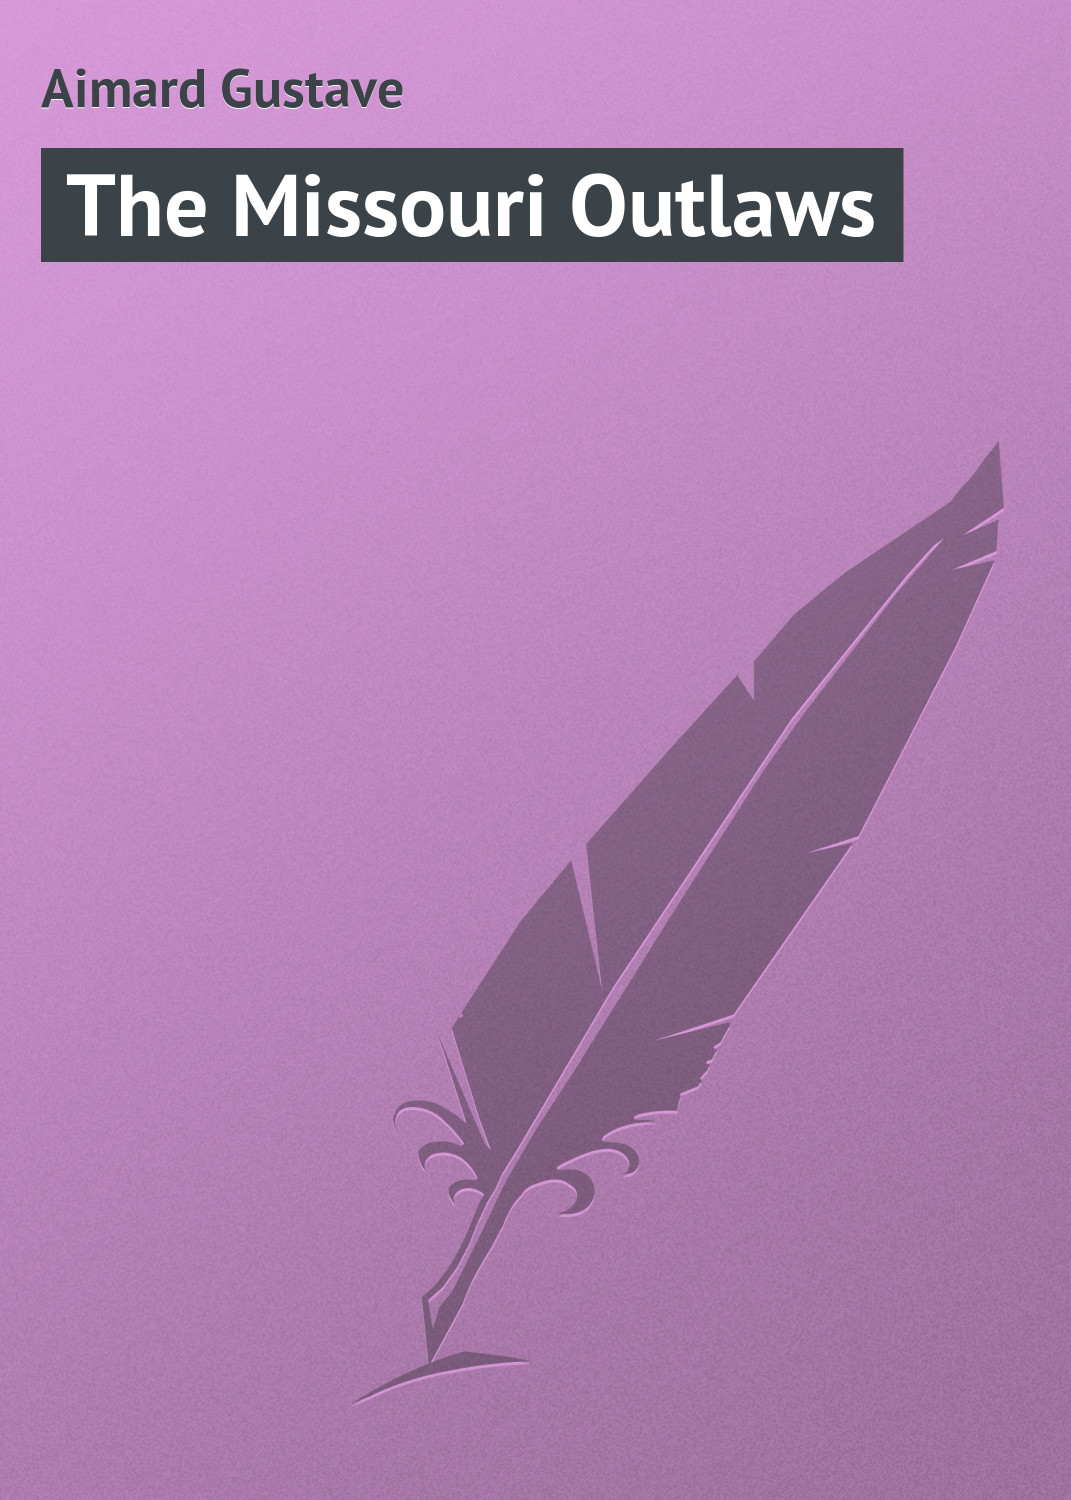 Книга The Missouri Outlaws из серии , созданная Gustave Aimard, может относится к жанру Иностранные языки, Зарубежная классика, Зарубежные приключения. Стоимость электронной книги The Missouri Outlaws с идентификатором 23169579 составляет 5.99 руб.